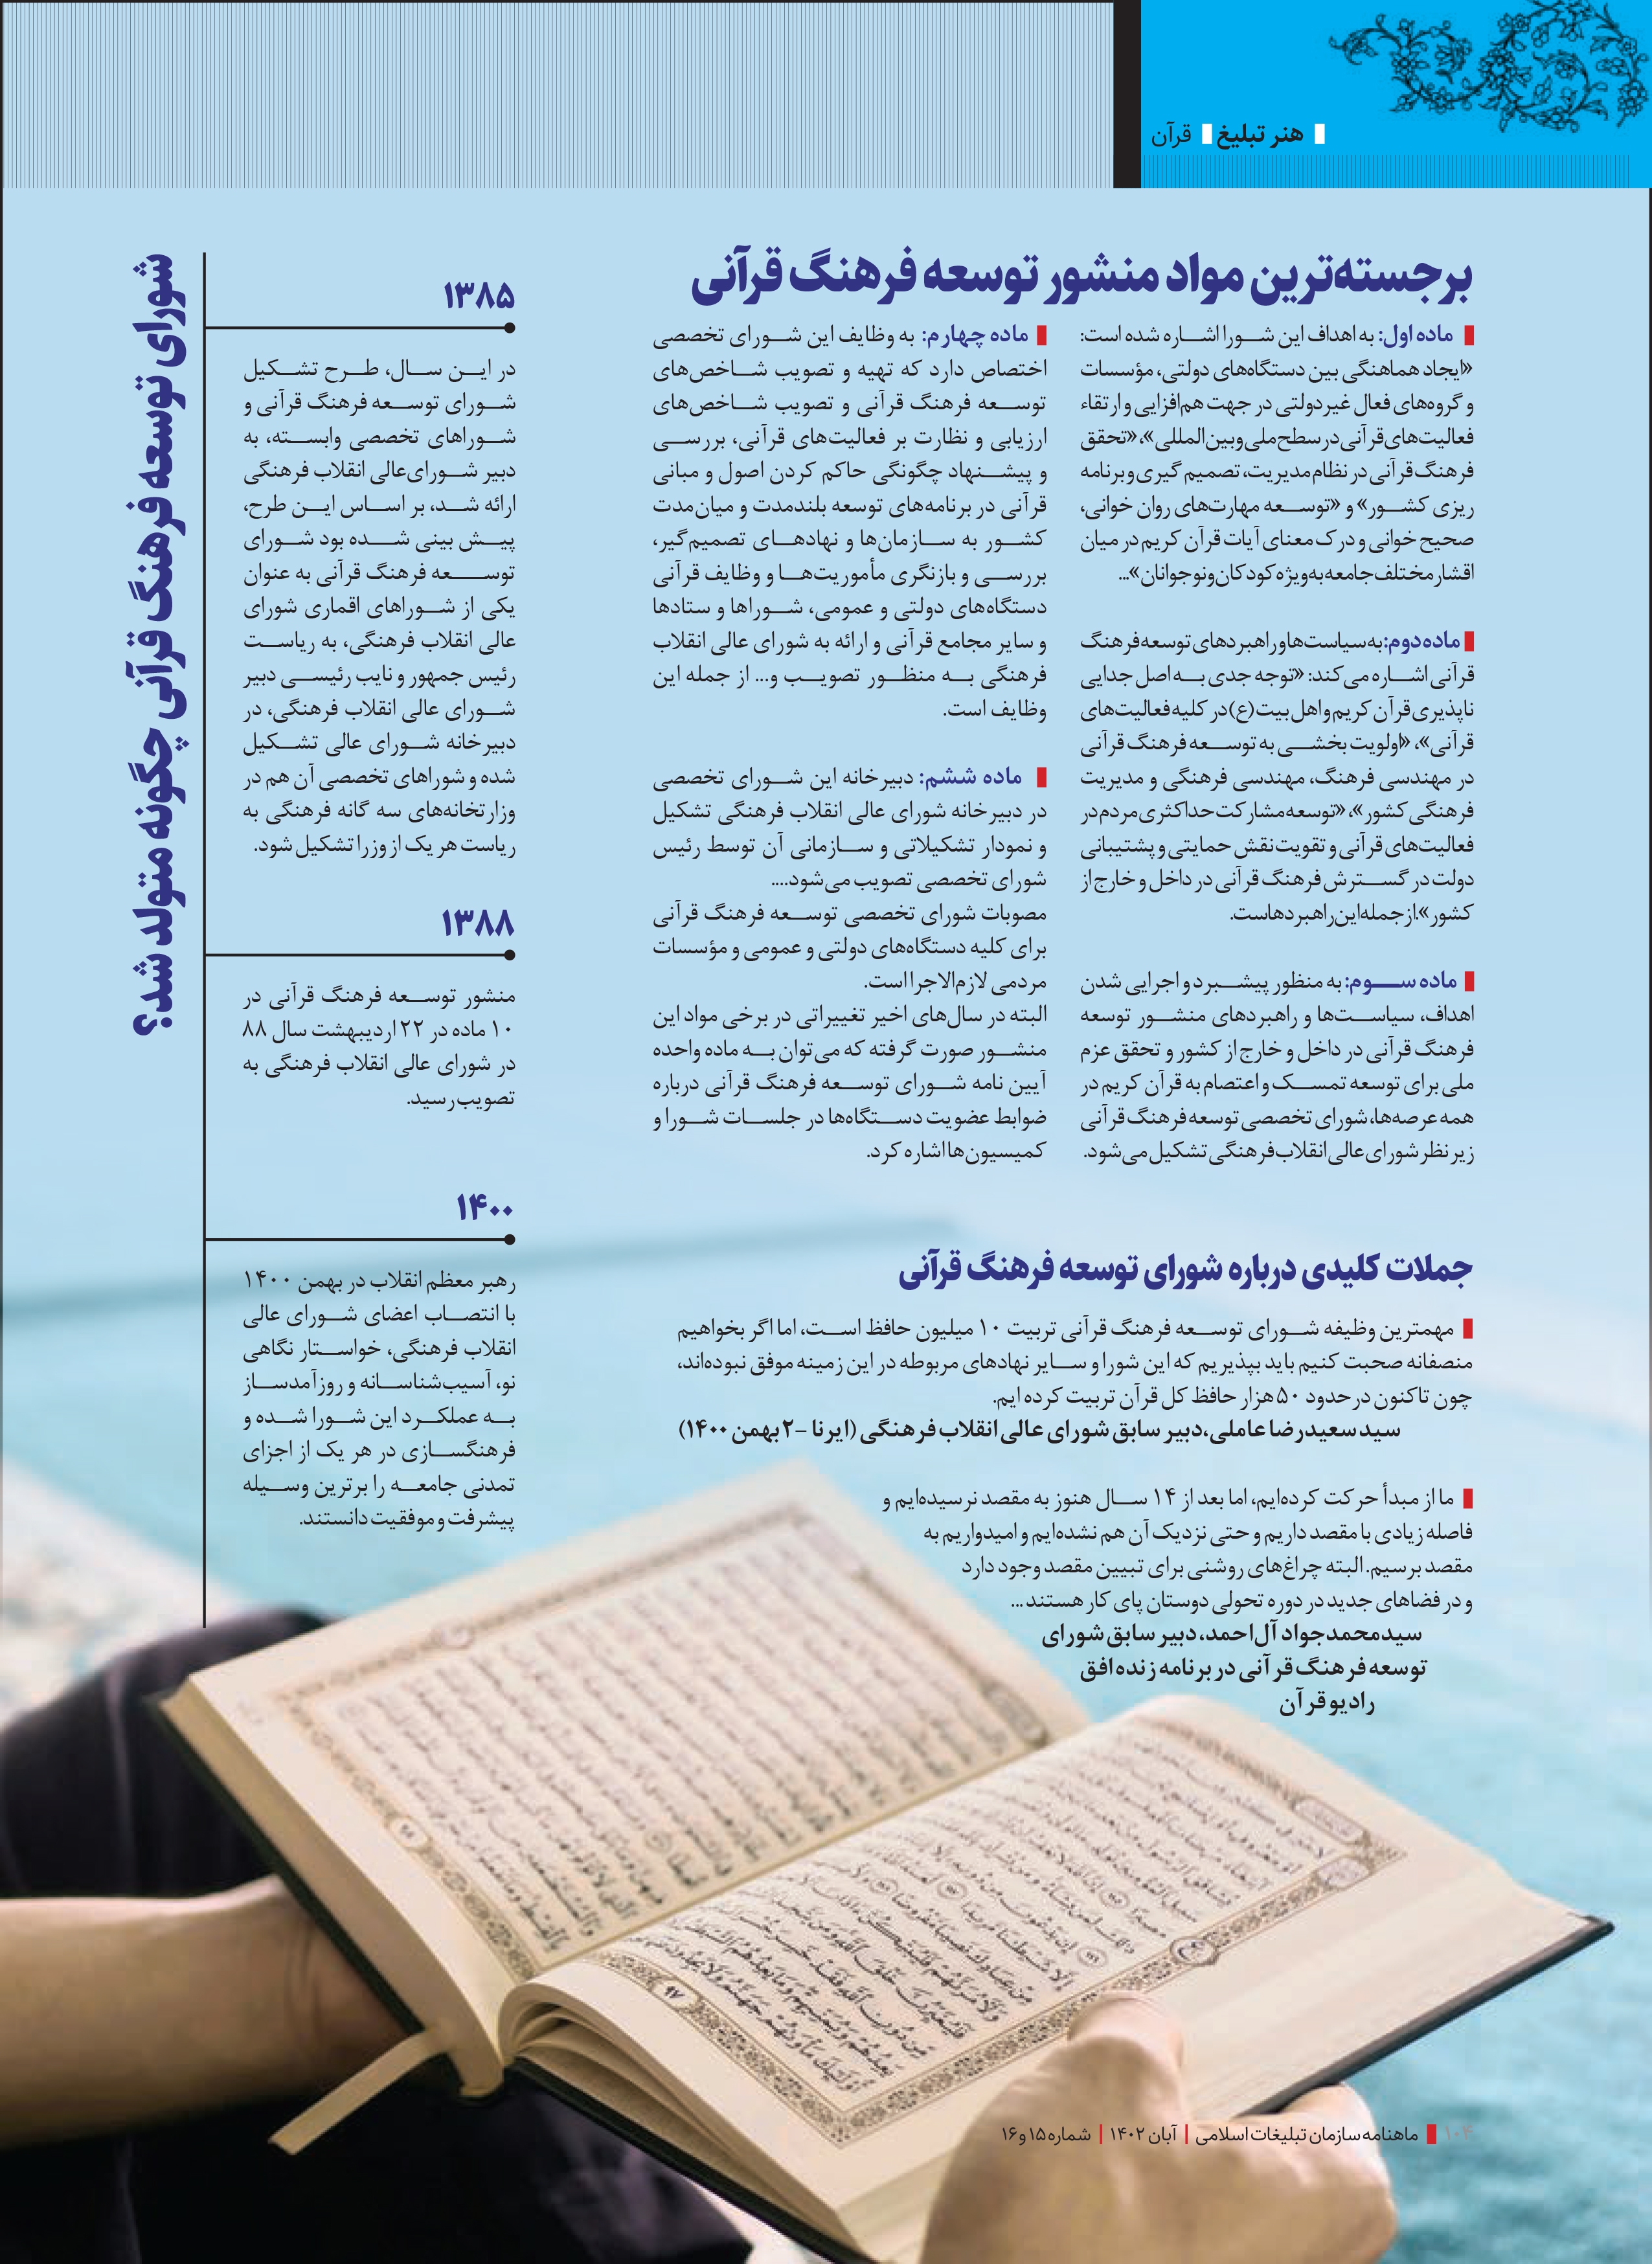 بازوی اجرایی برای فرهنگ قرآنی